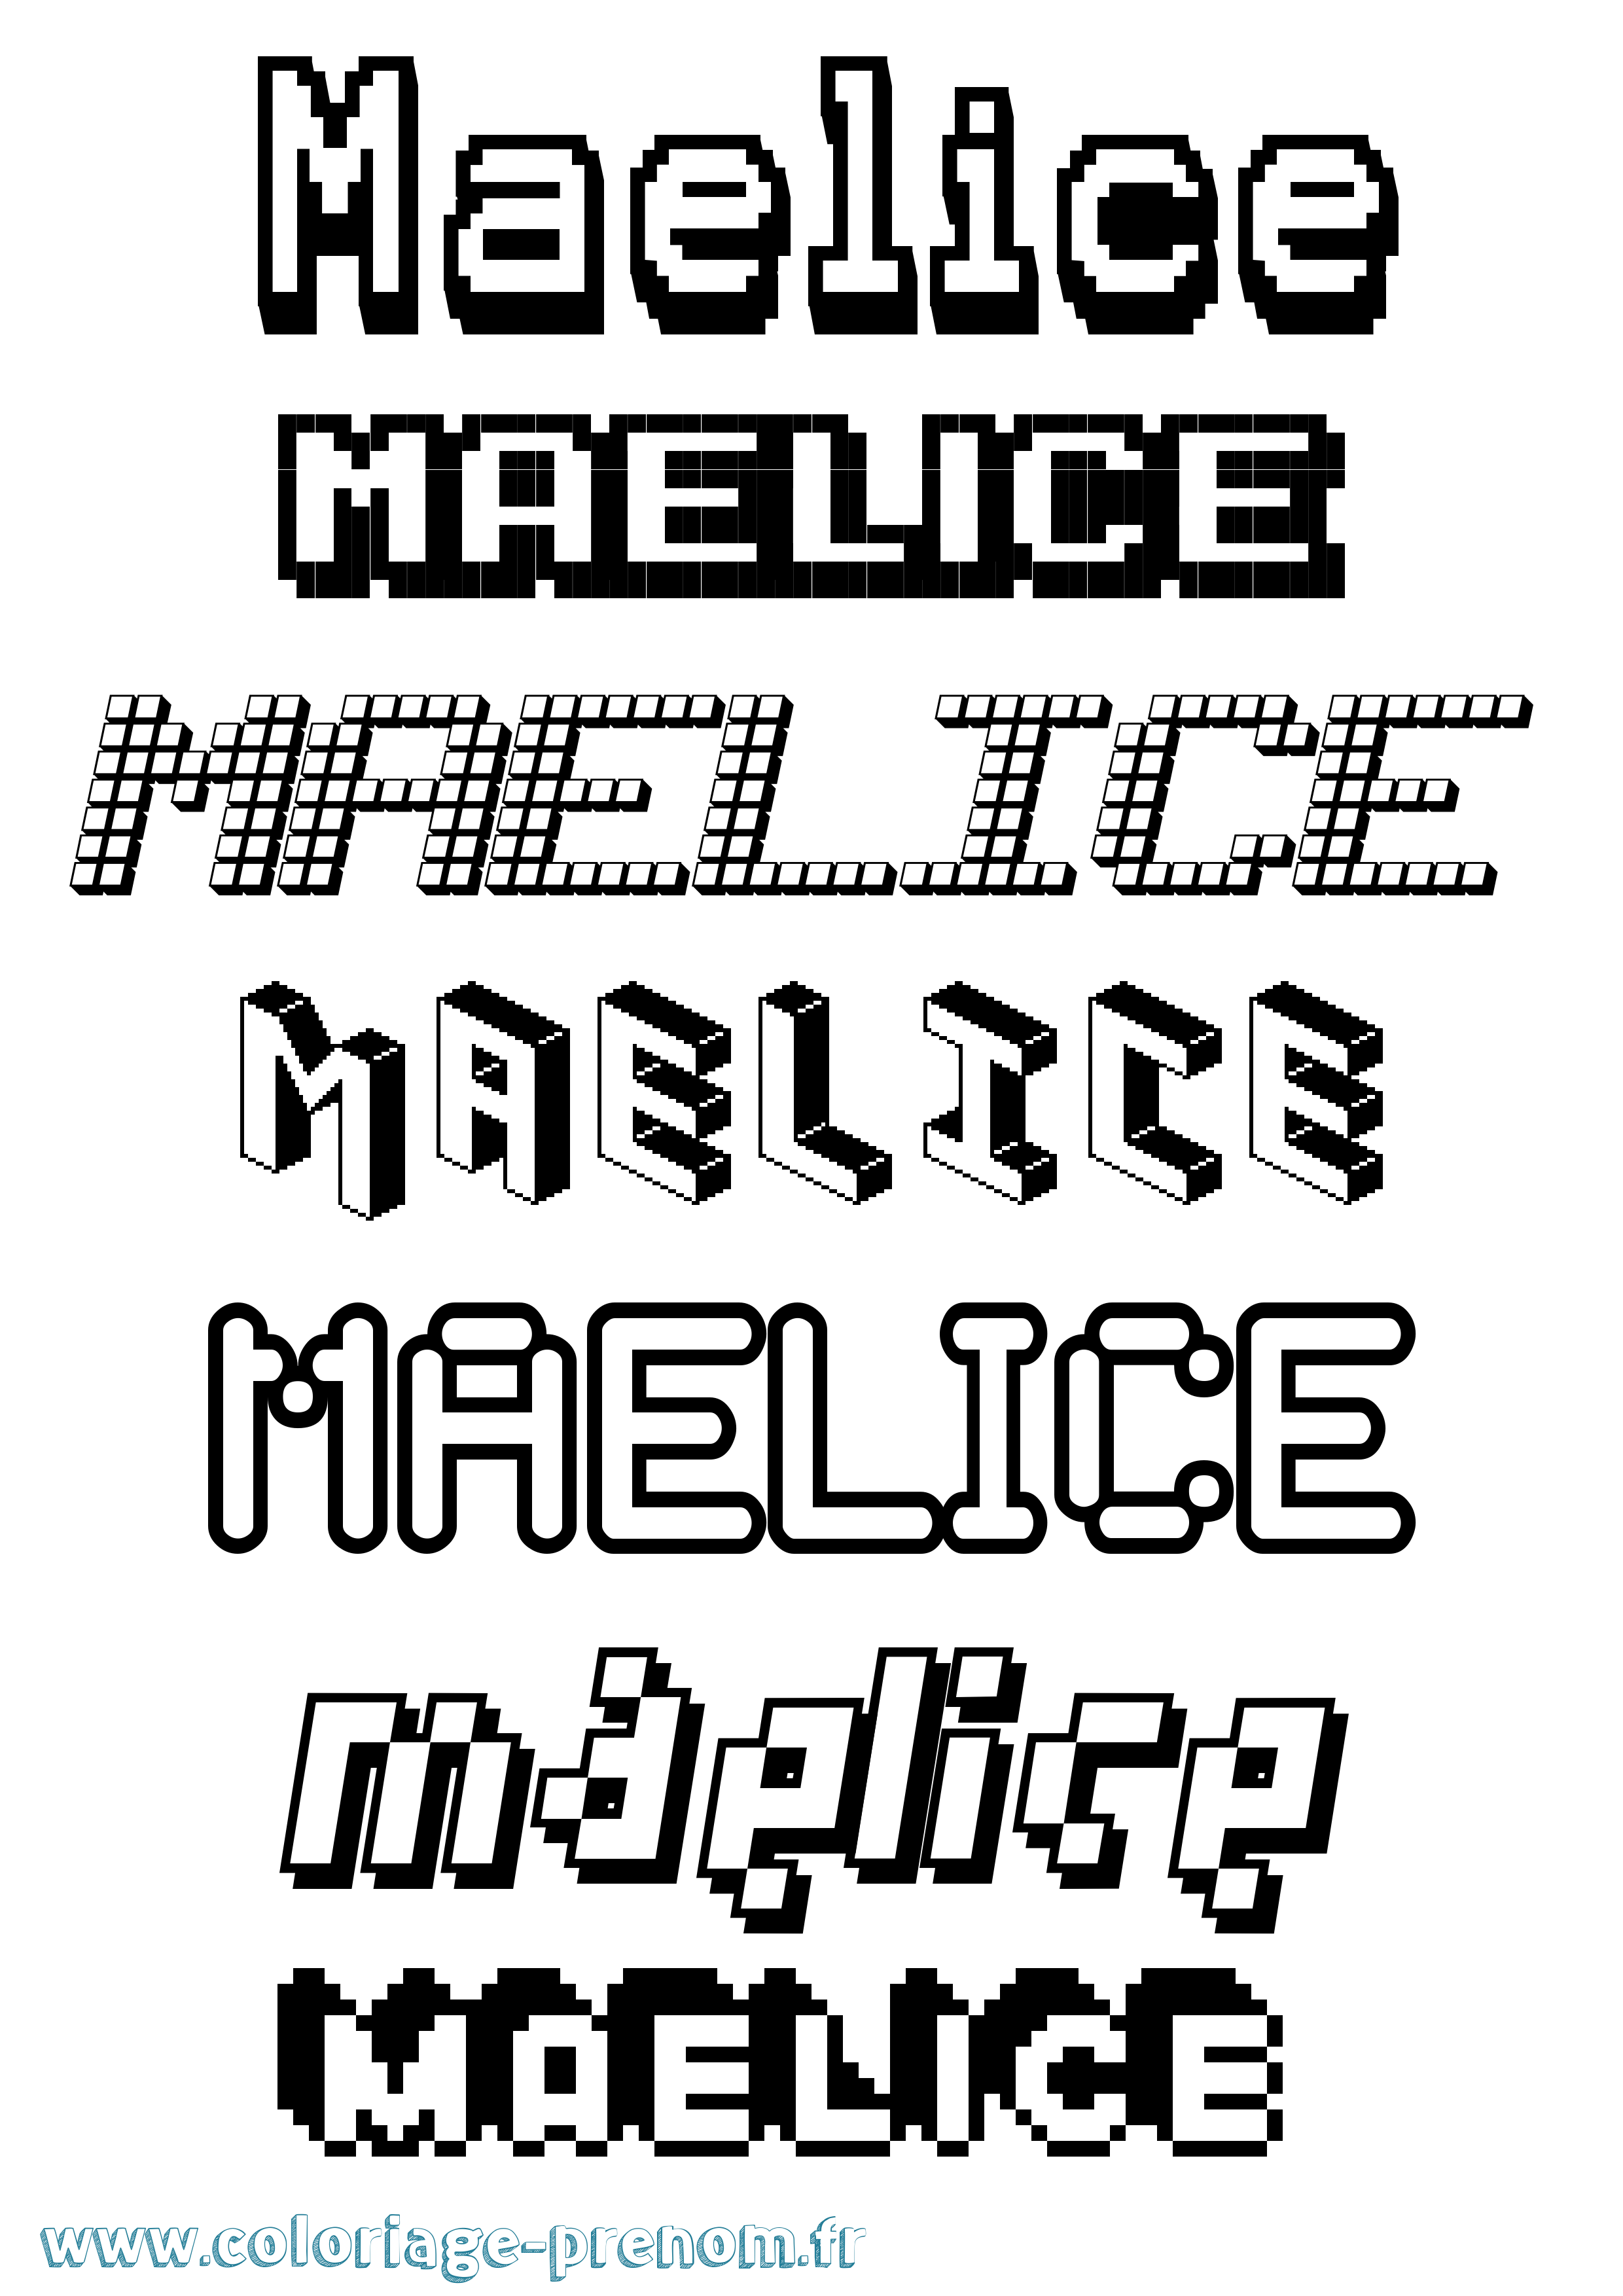 Coloriage prénom Maelice Pixel